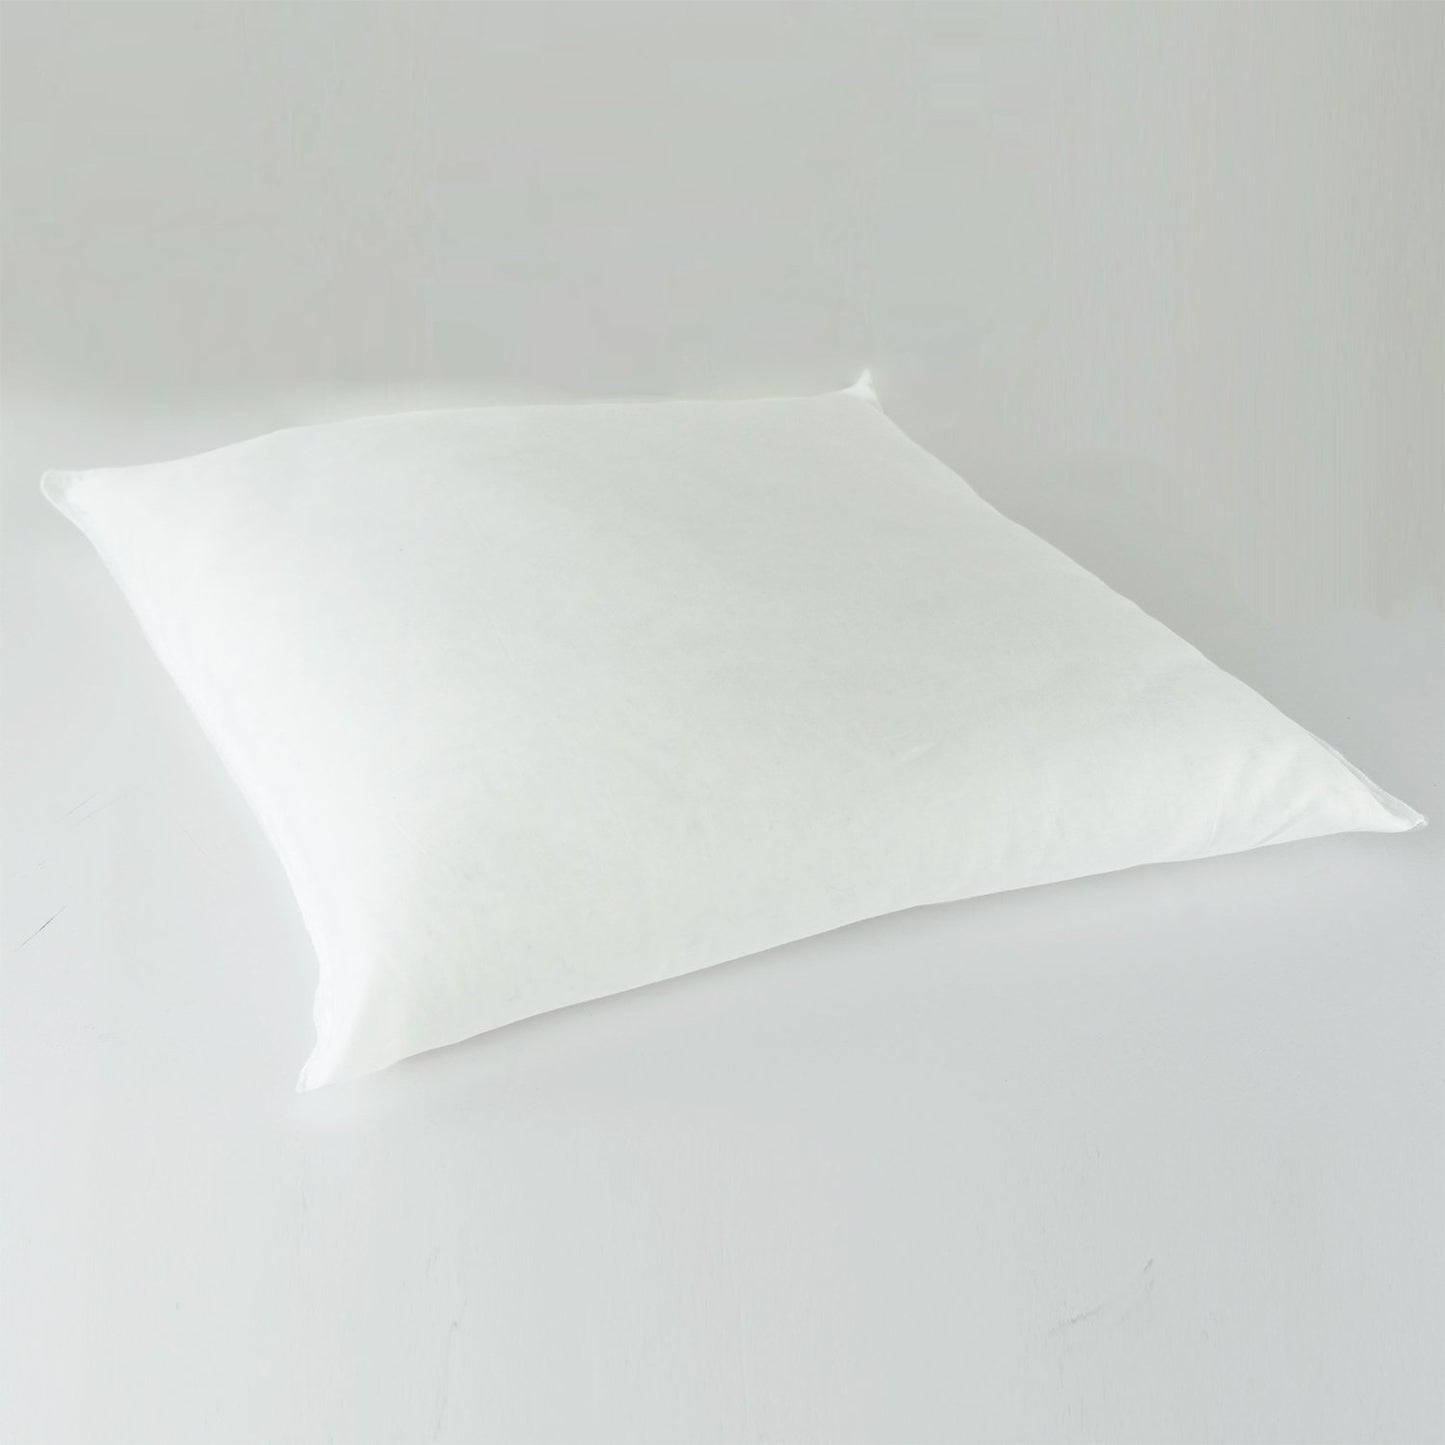 J-Life Tombo Purple Zabuton Floor Pillow_Pillows & Shams_Zabuton Floor Pillows_100% Cotton_Reversible_Handmade